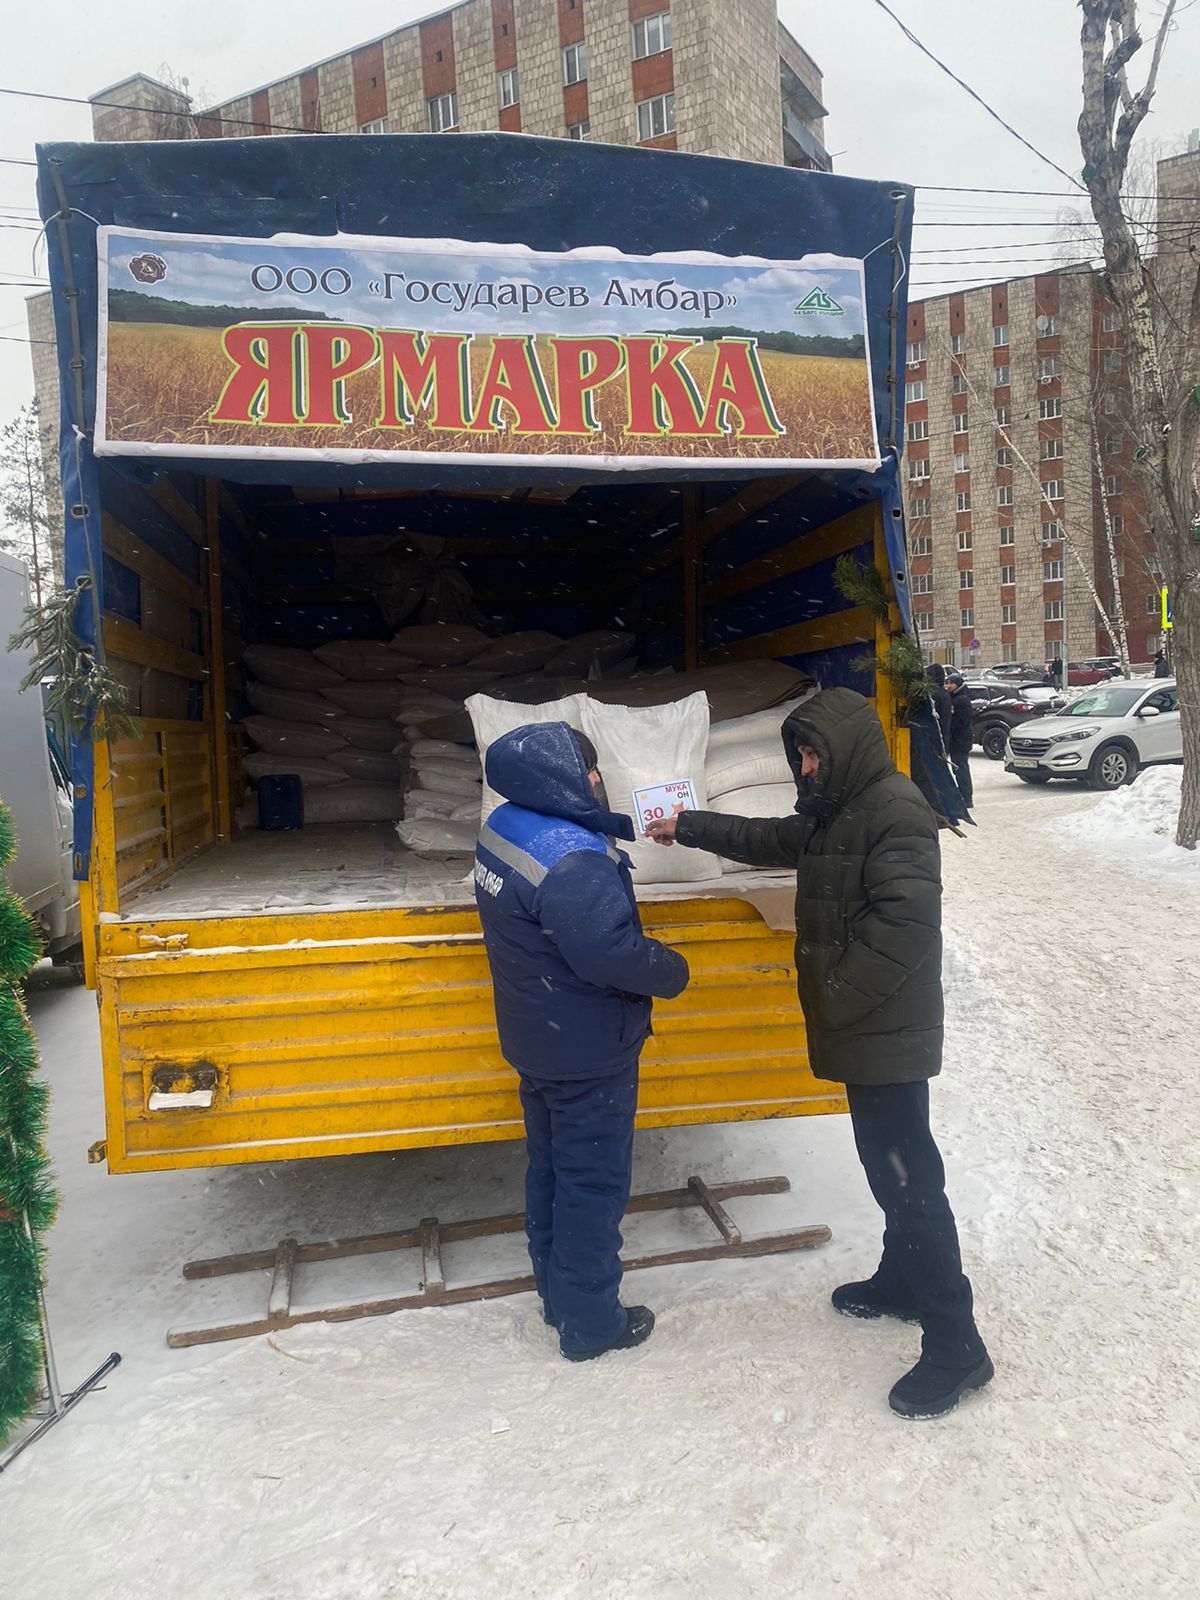 Дрожжановцы представляют предновогоднюю сельхозярмарку жителям Казани